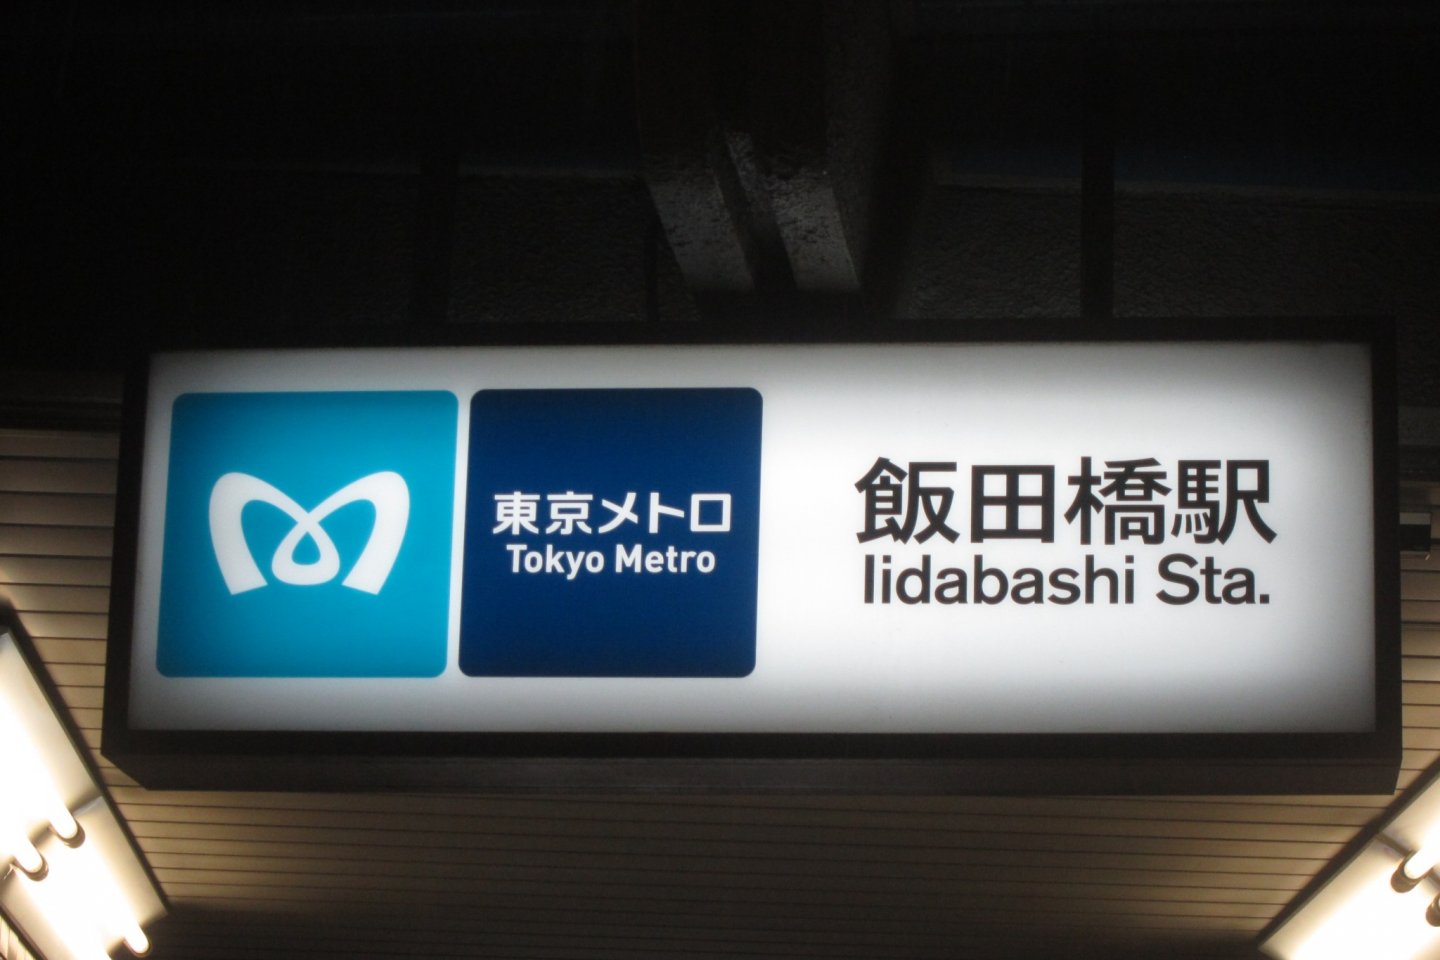 Tokyo Metro Station